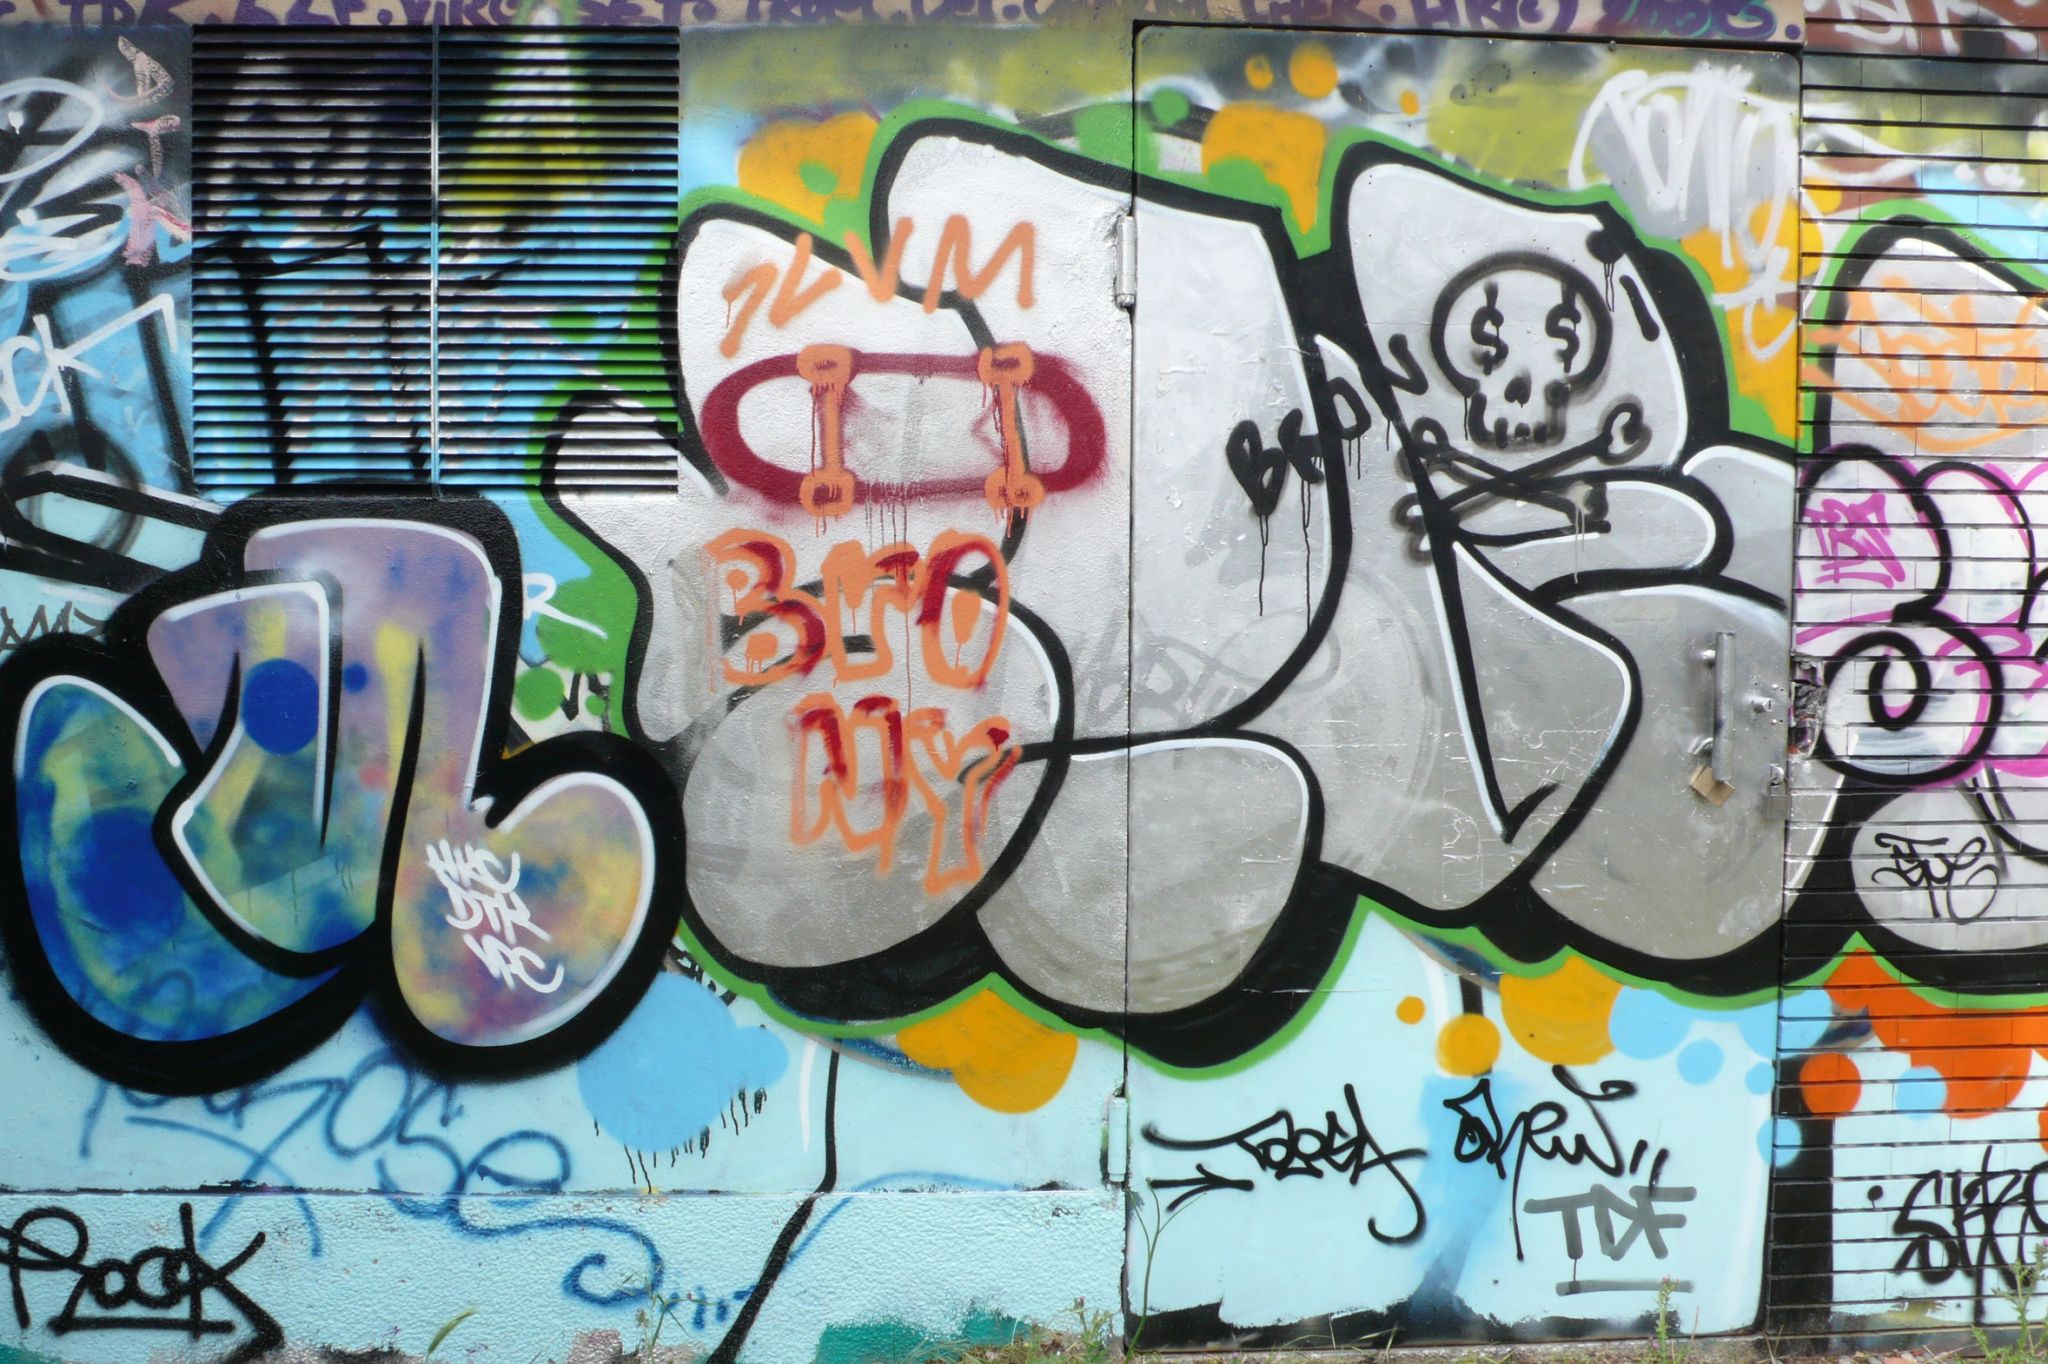 des graffitis sur un mur (tags)